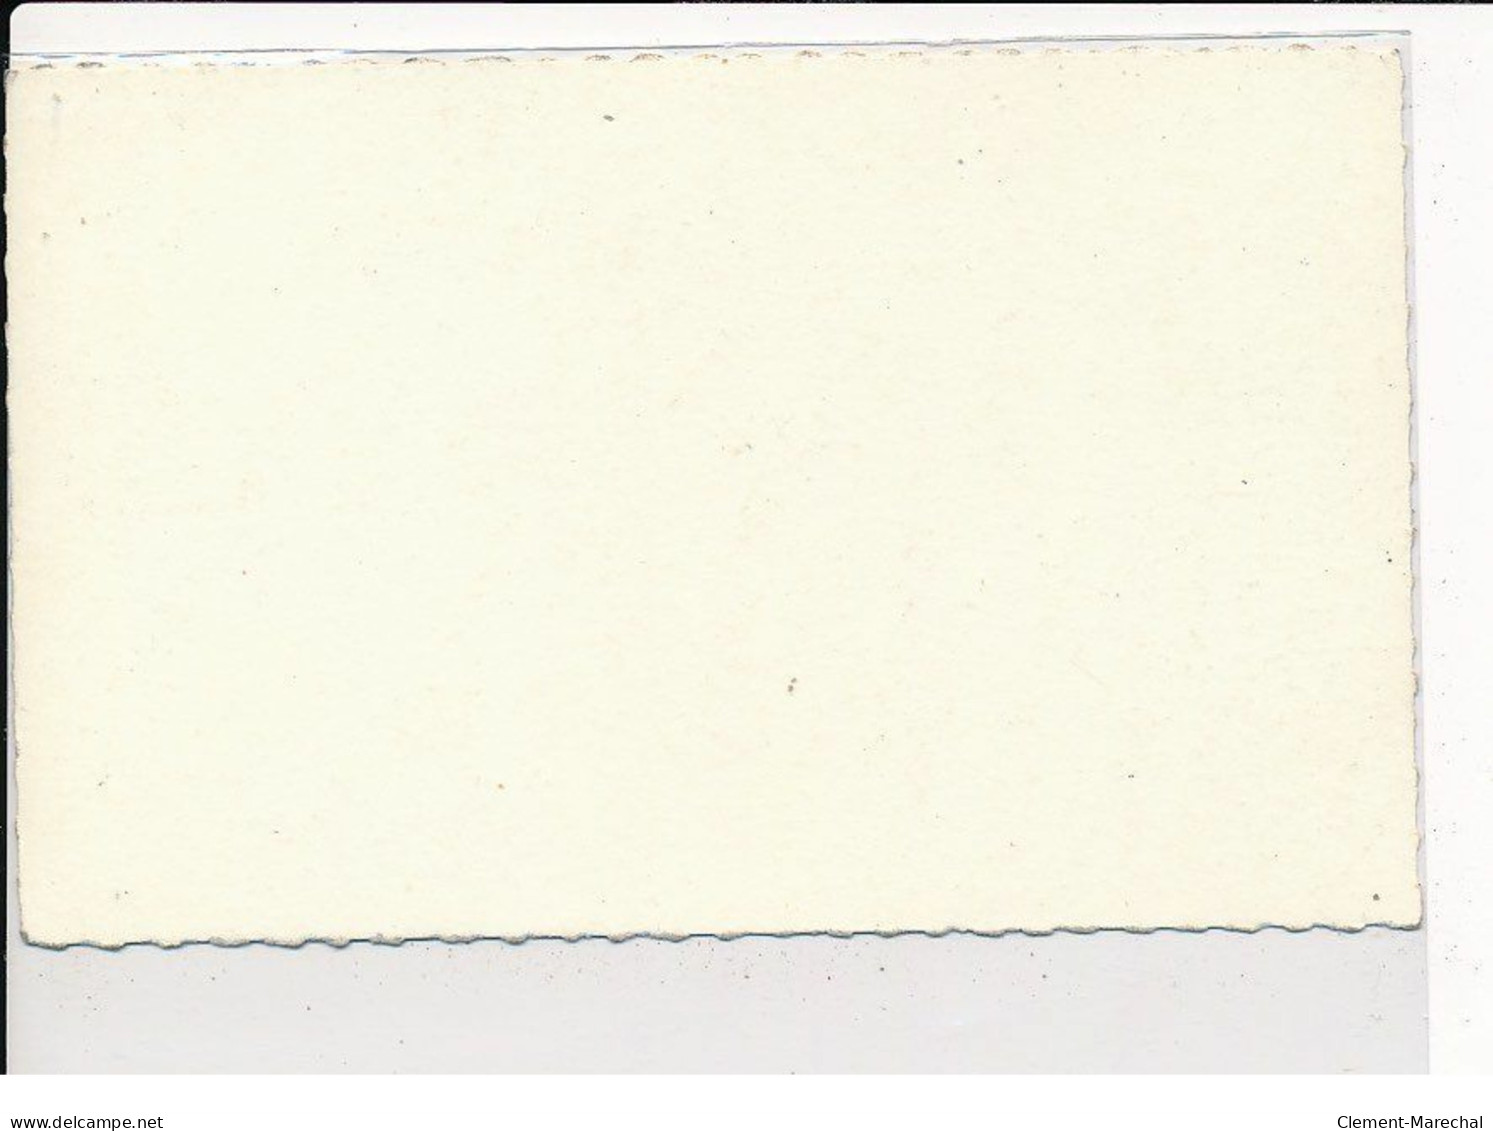 Autographe De Eddy Mitchell, Chanteur - Très Bon état - Other & Unclassified